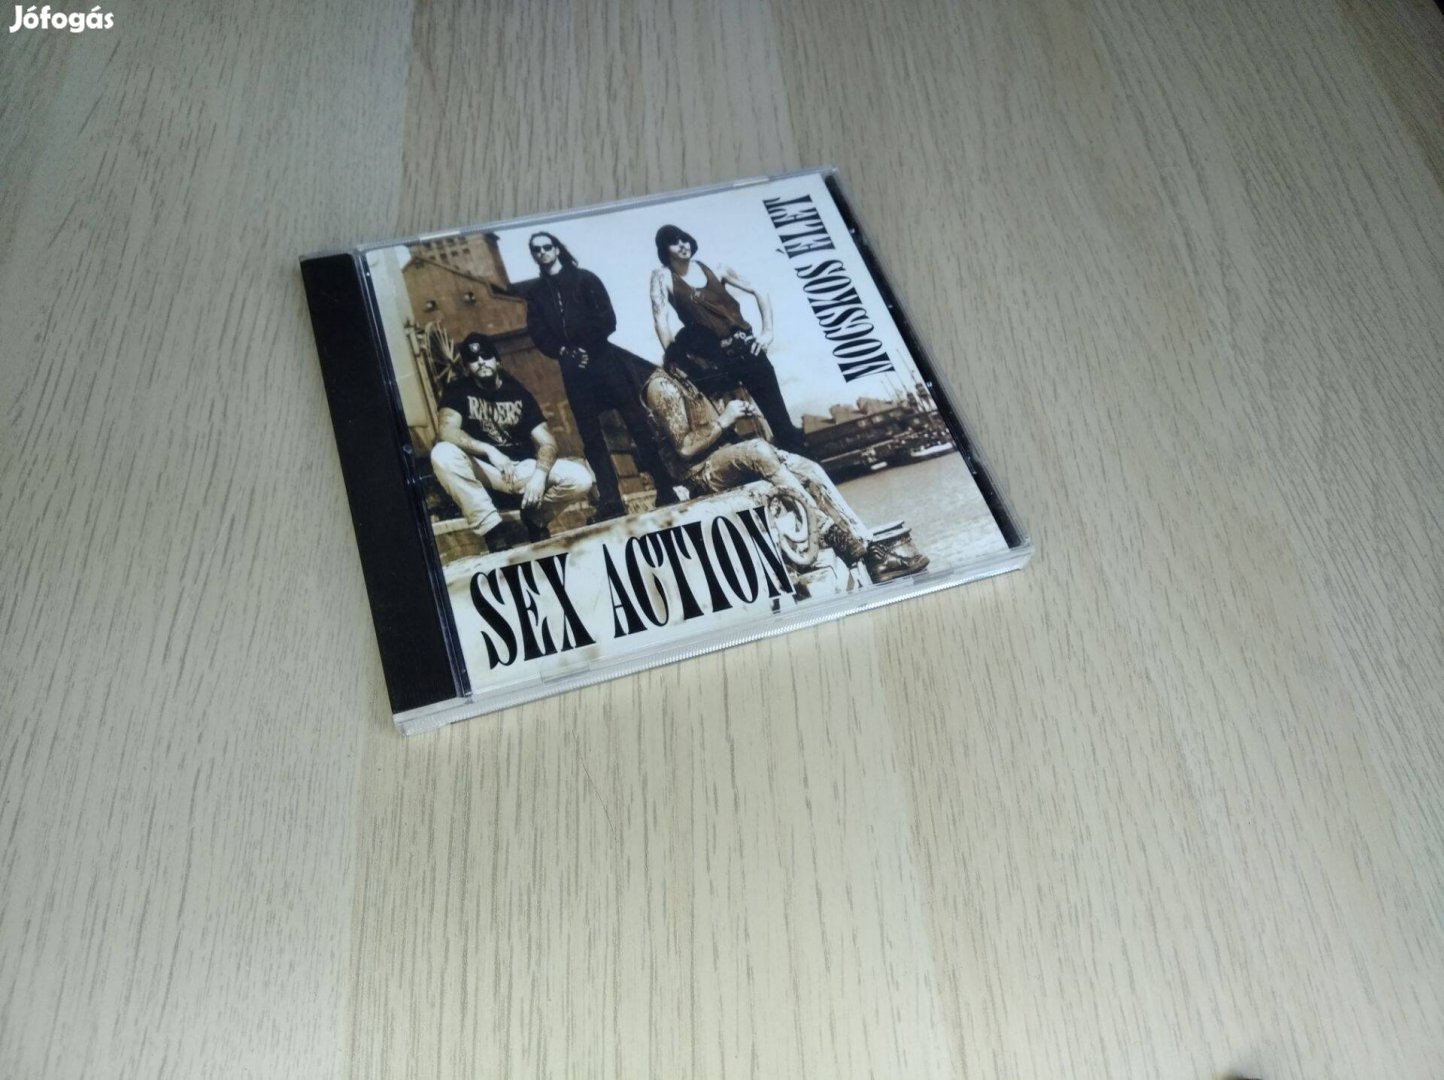 Sex Action - Mocskos élet CD 1993. (Quint)